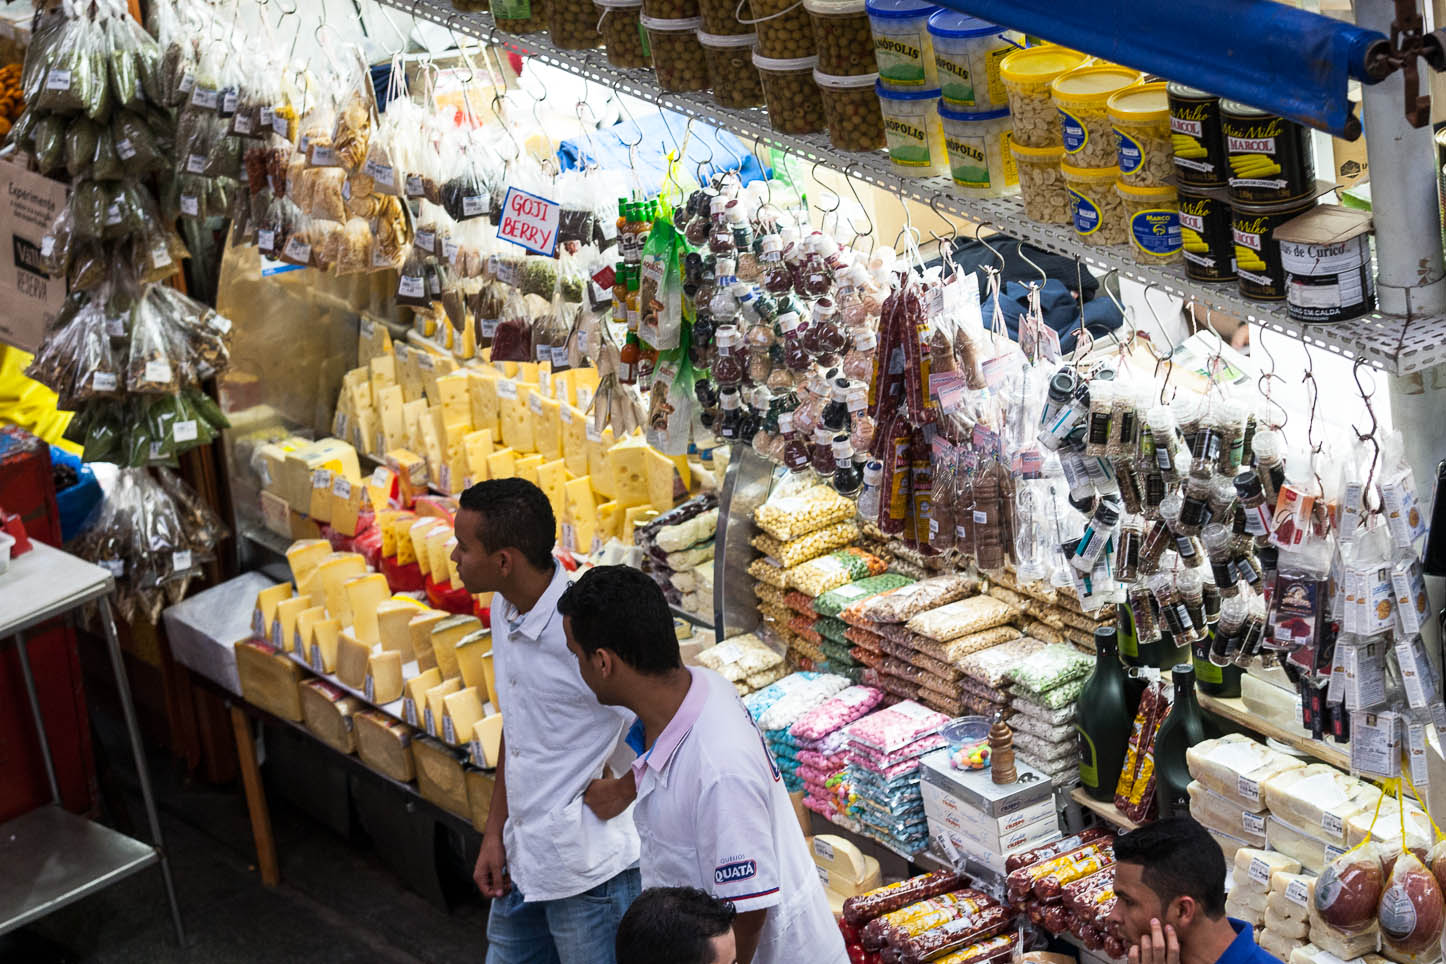  Mercado Municipal de São Paulo (Mercadão) 